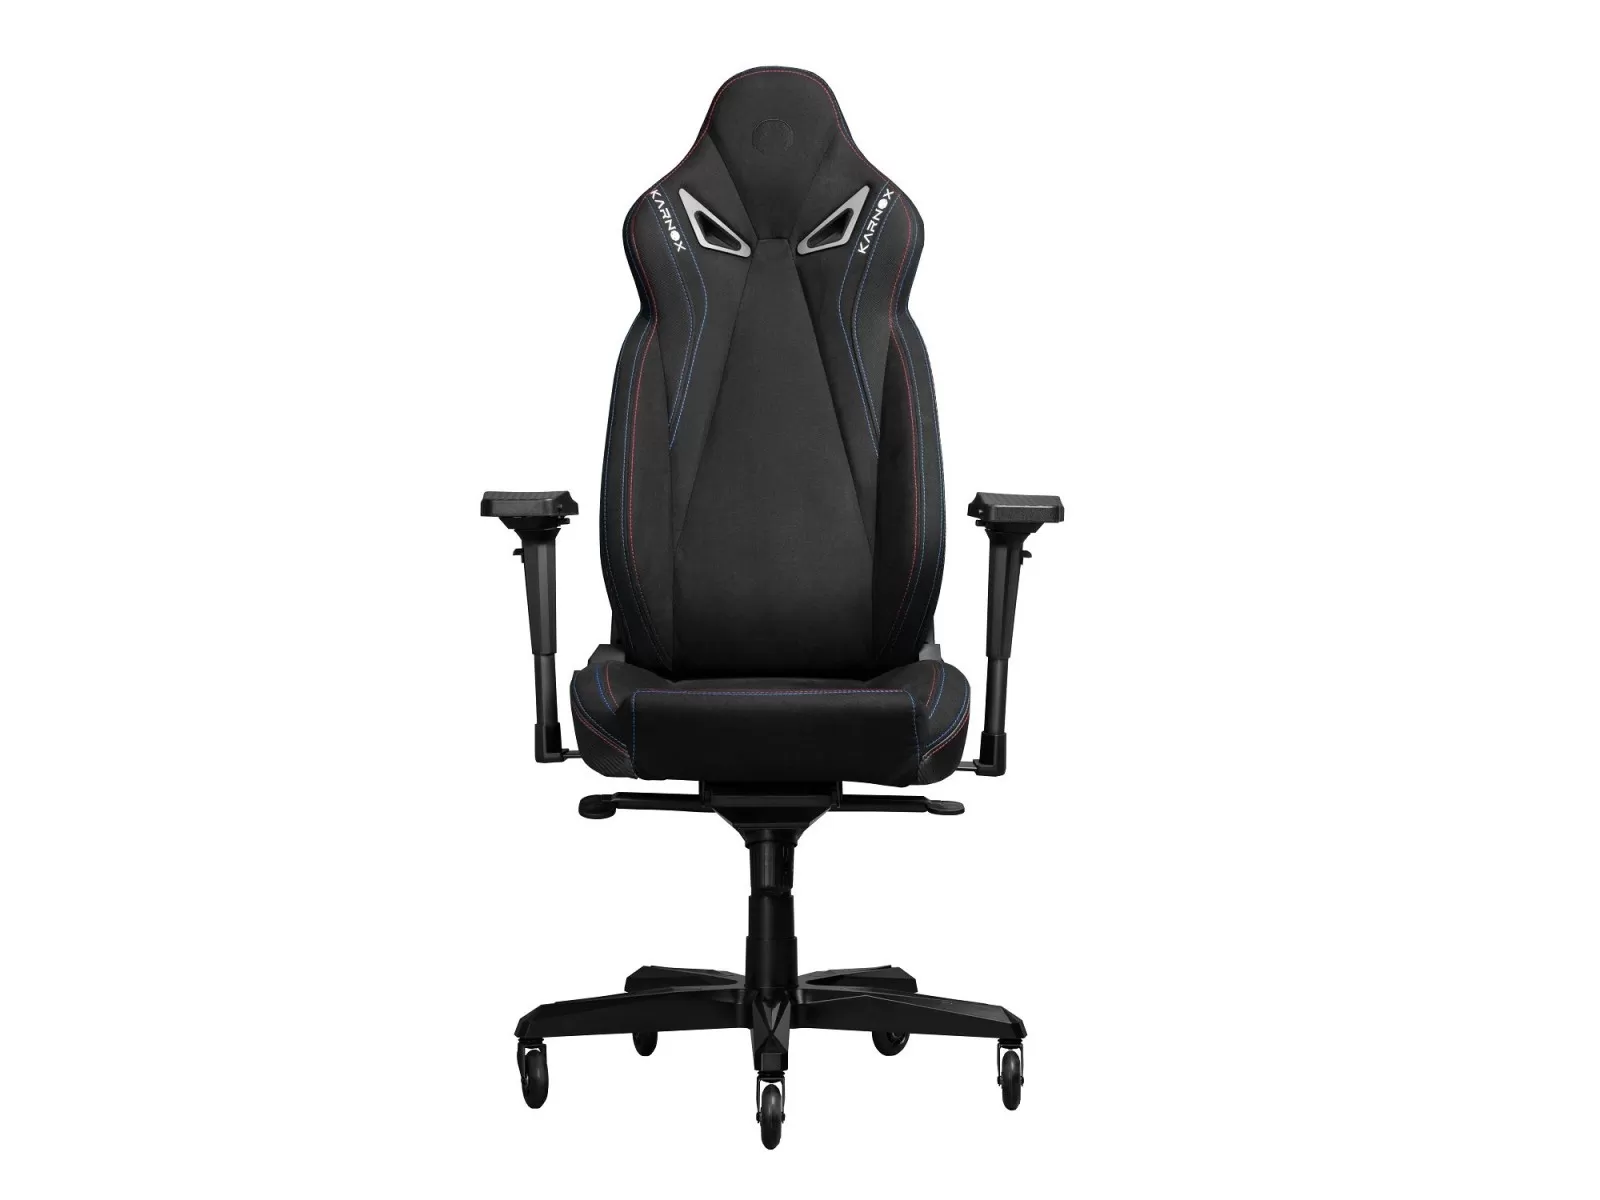 Игровое кресло KARNOX Assassin, Ghost Edition